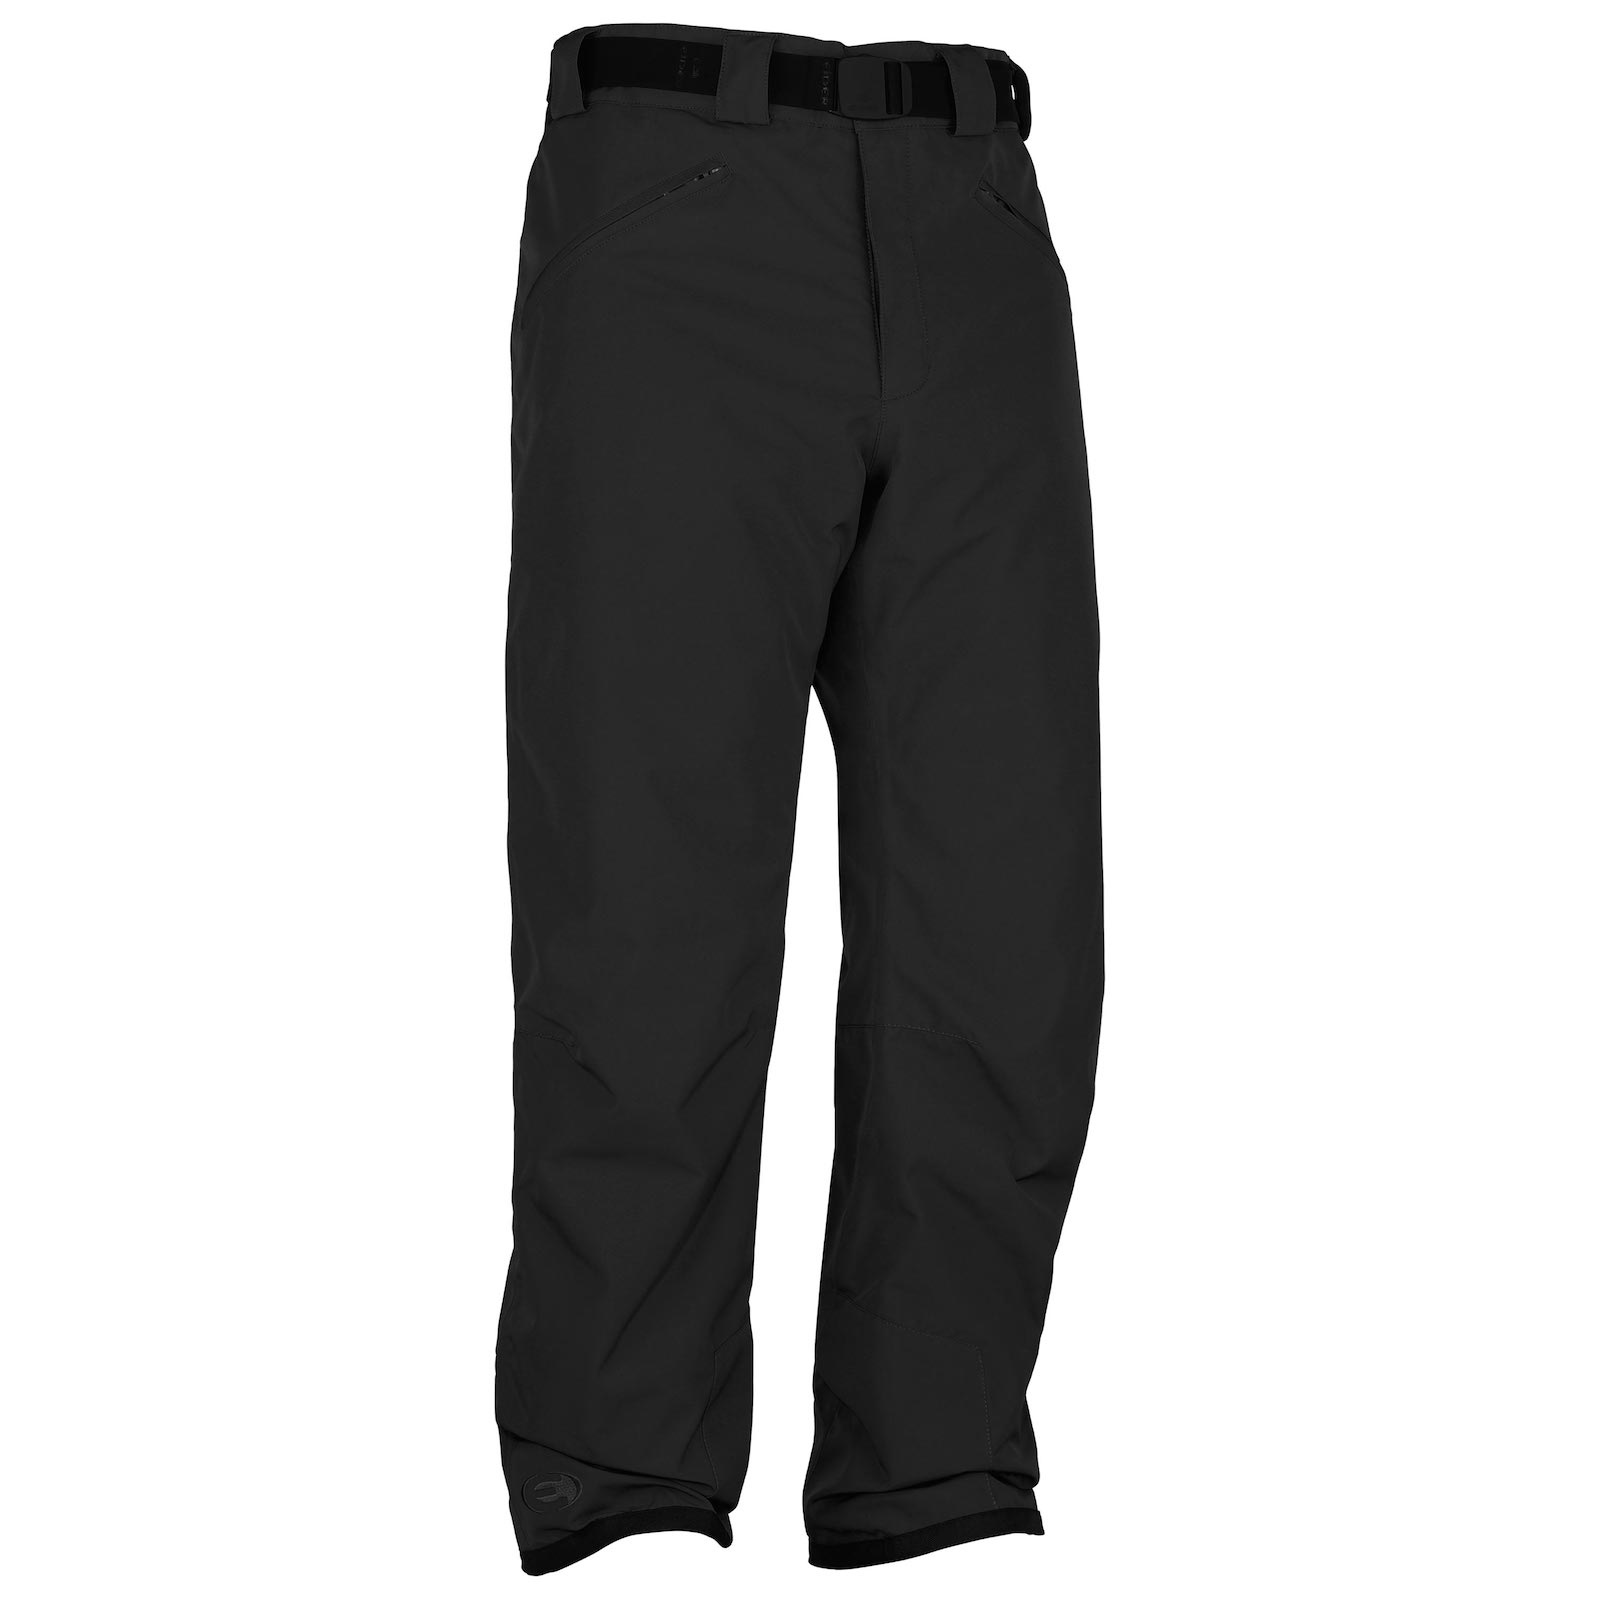 Eider - Alta Badia - Ski trousers - Men's